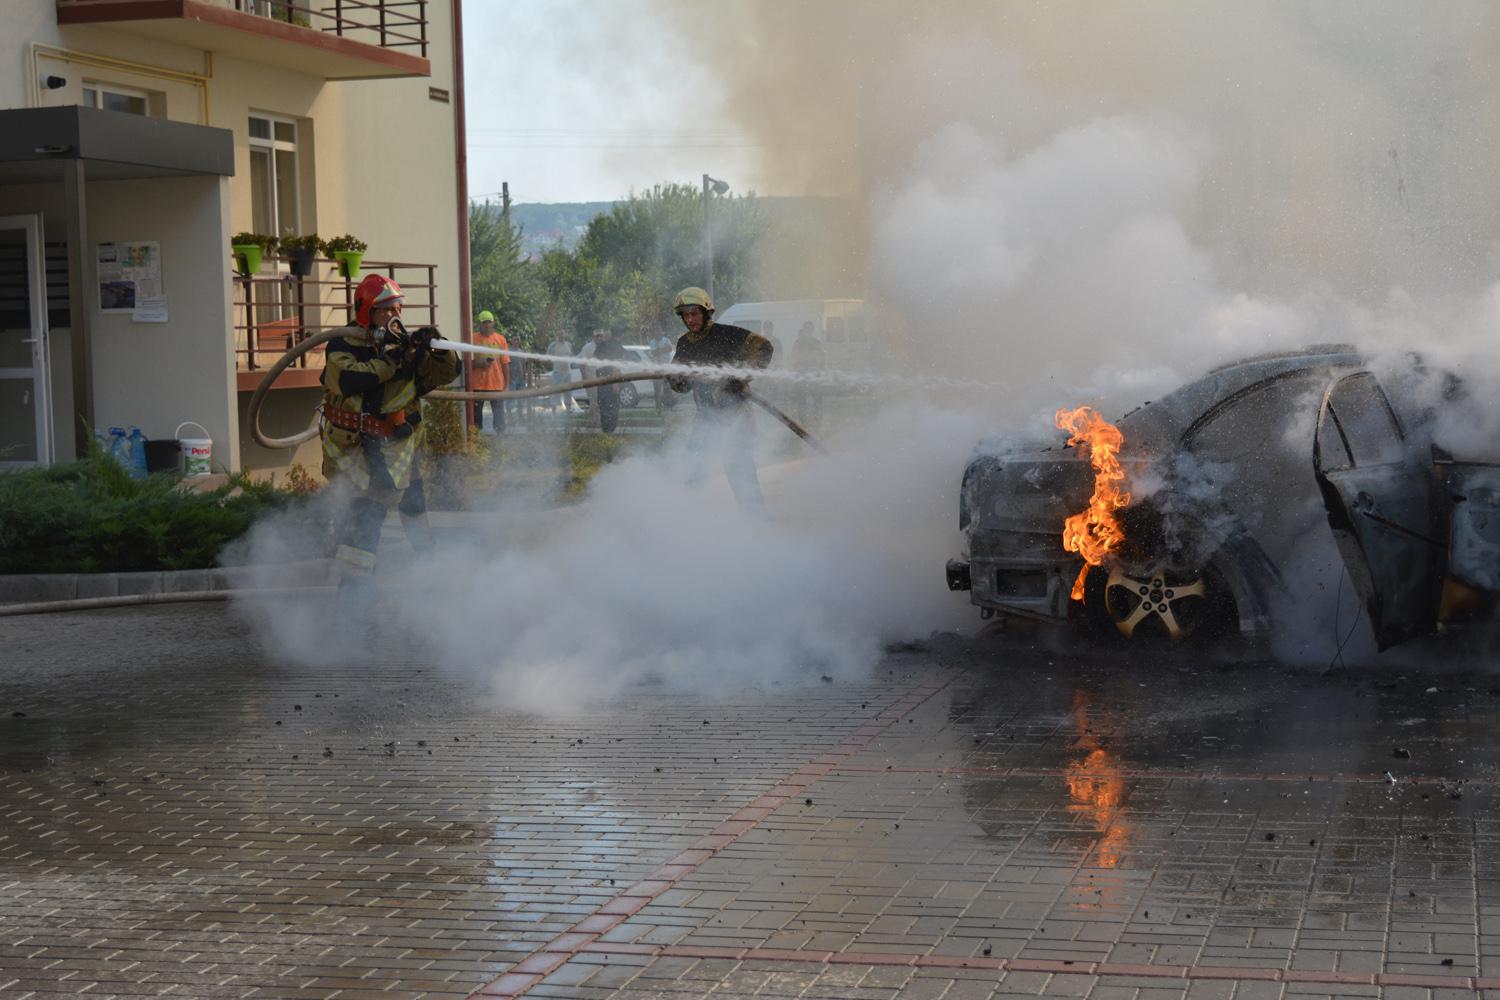 03 вересня о 09:25 до Служби порятунку надійшов виклик на пожежу автомобіля Toyota Avensis на вулиці Гвардійській, що в Ужгороді.

